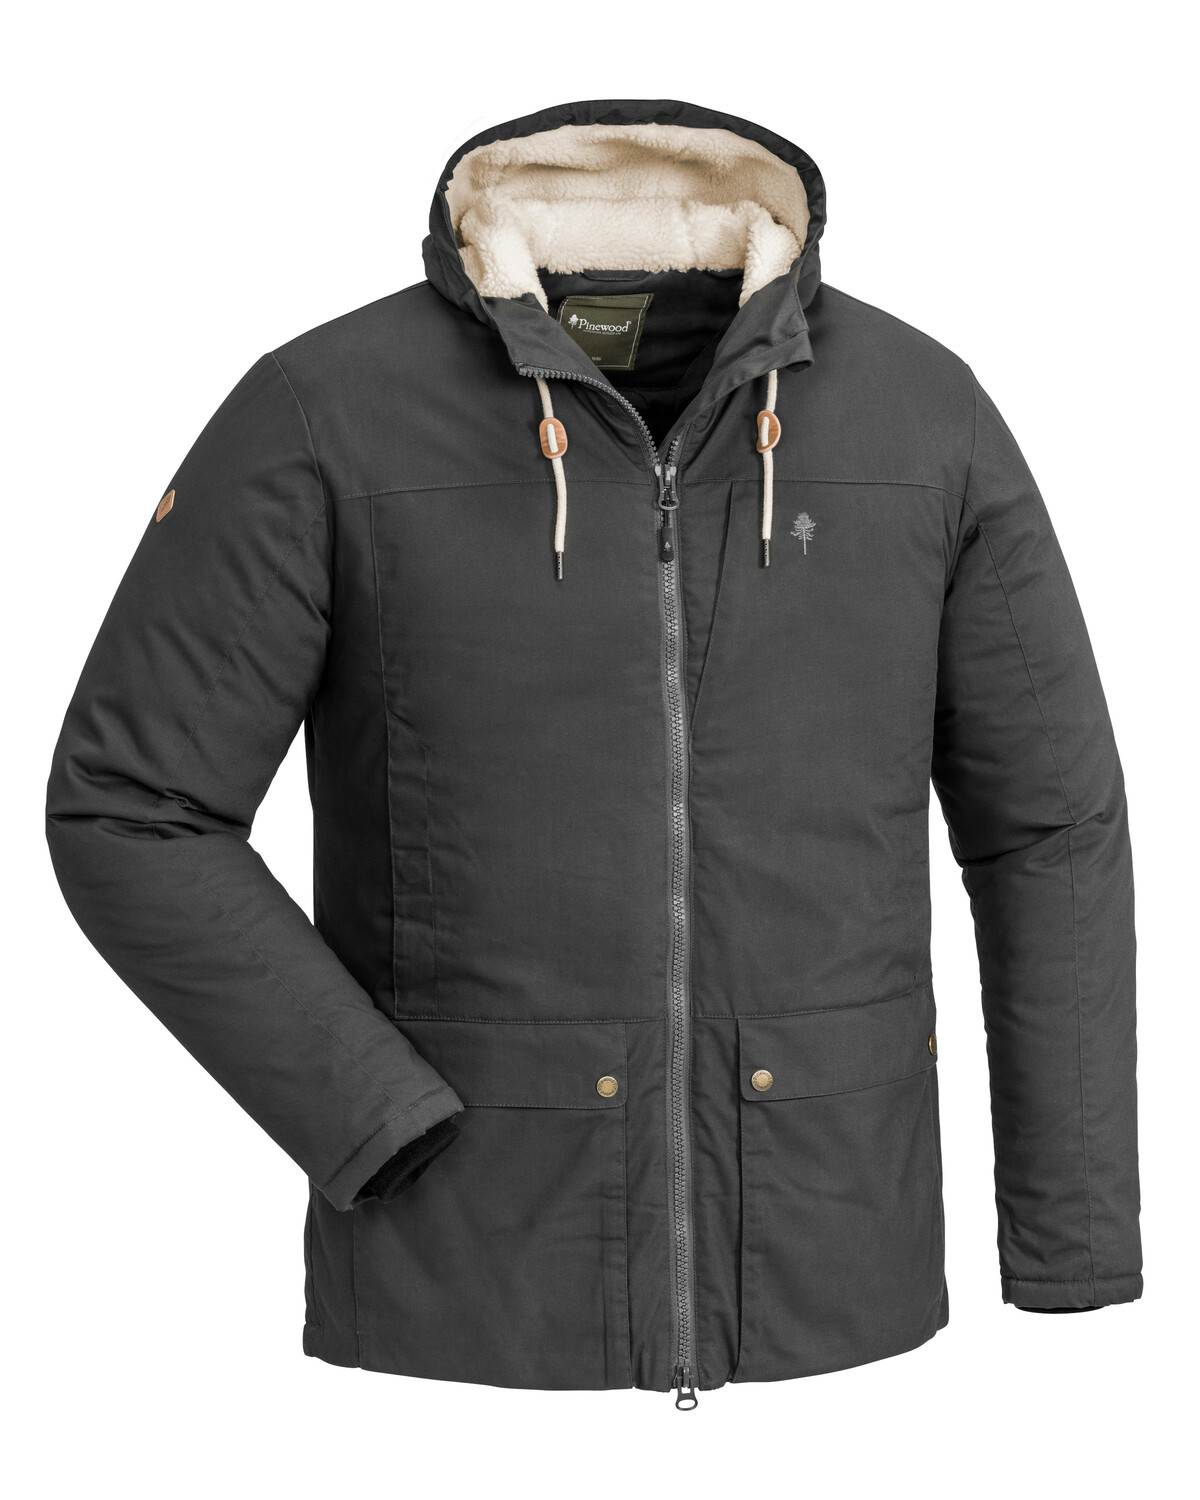 Зимняя куртка BORGAN JACKET Pinewood 5030-443